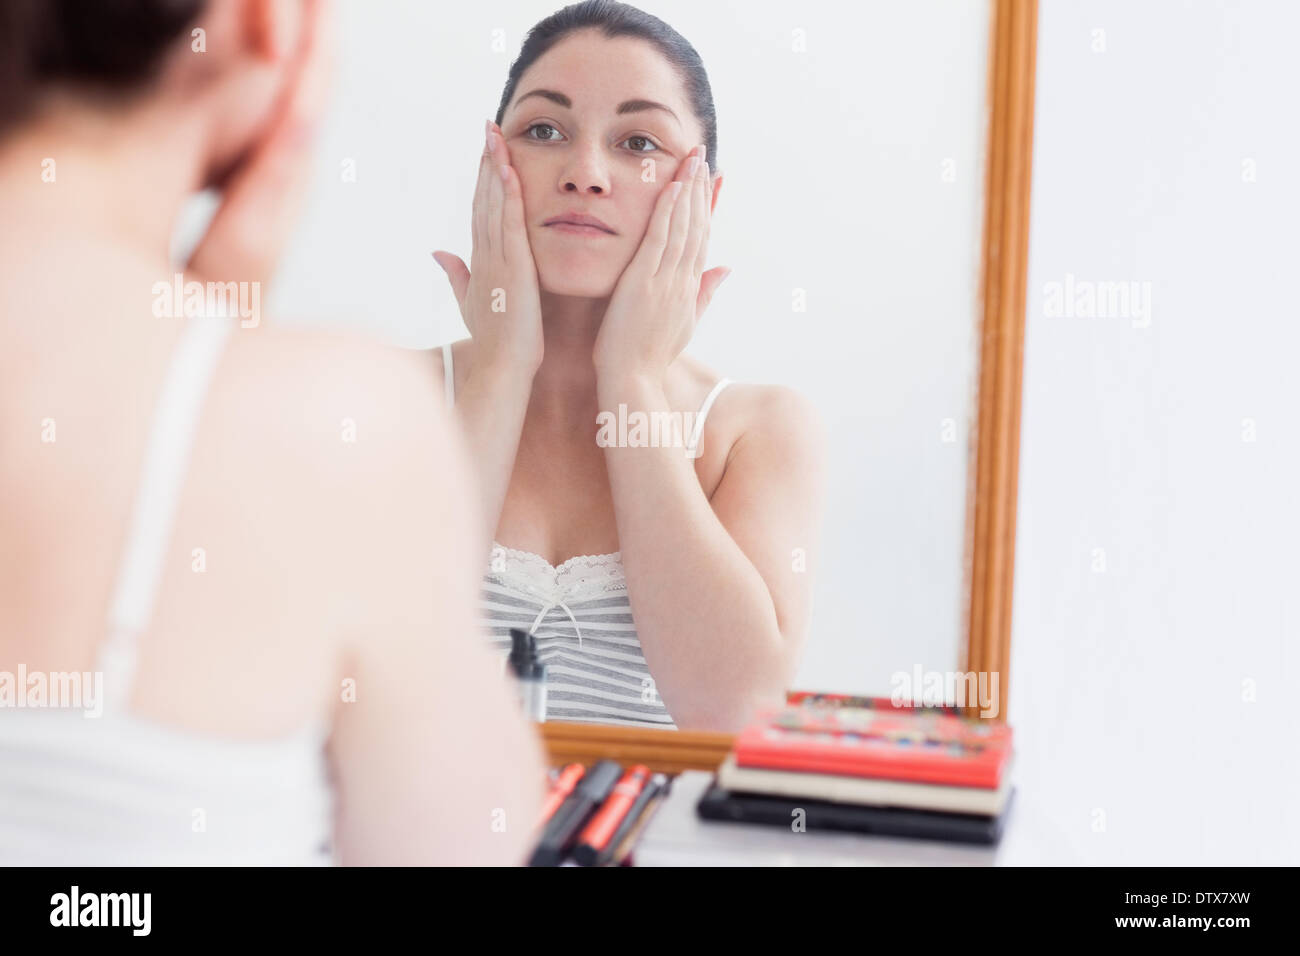 Неприятный небольшой. Массаж лица перед зеркалом. Женщина в зеркале массаж. Девушка у зеркала массаж. Женщина у зеркала делает массаж лица.